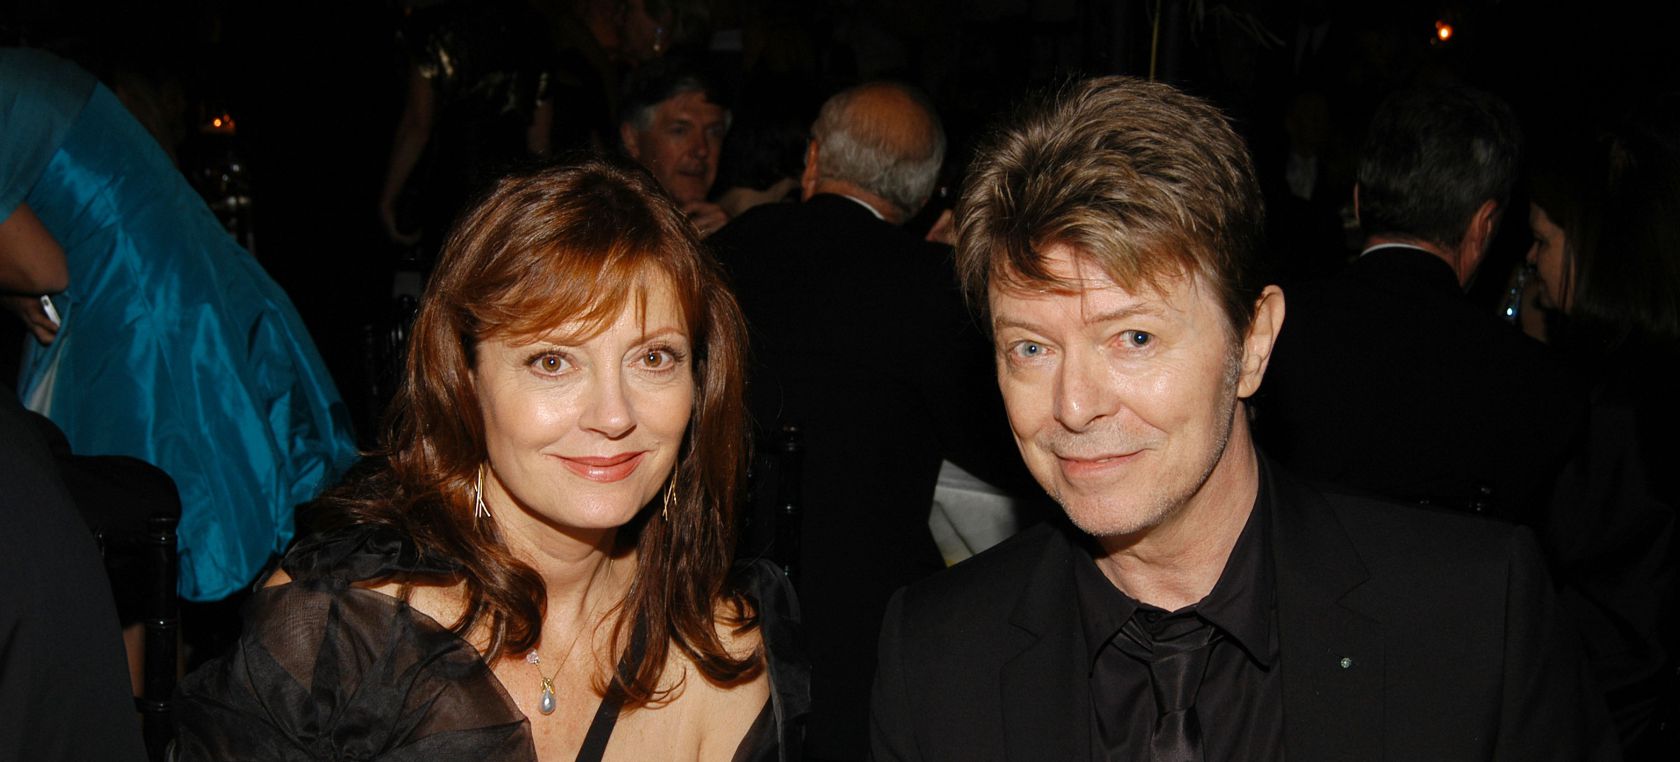 Susan Sarandon recuerda su romance con David Bowie: “Su llamada me dejó un vacío doloroso”